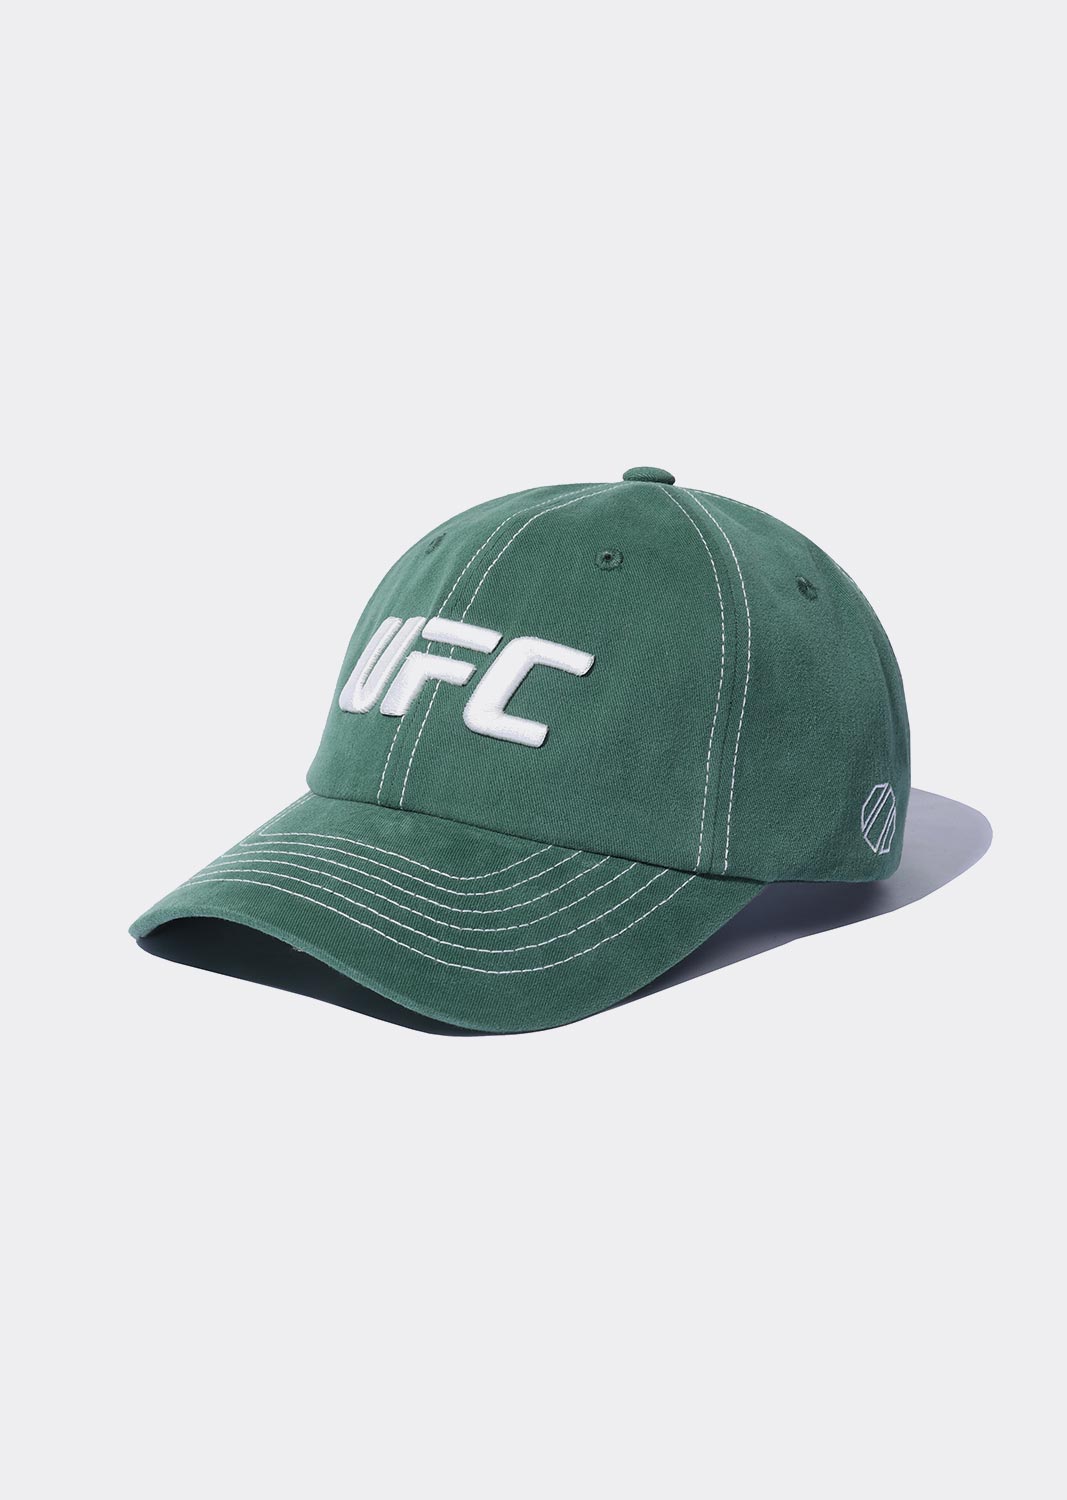 UFC 에센셜 피치 볼캡 라이트카키 U2HWU1310LK